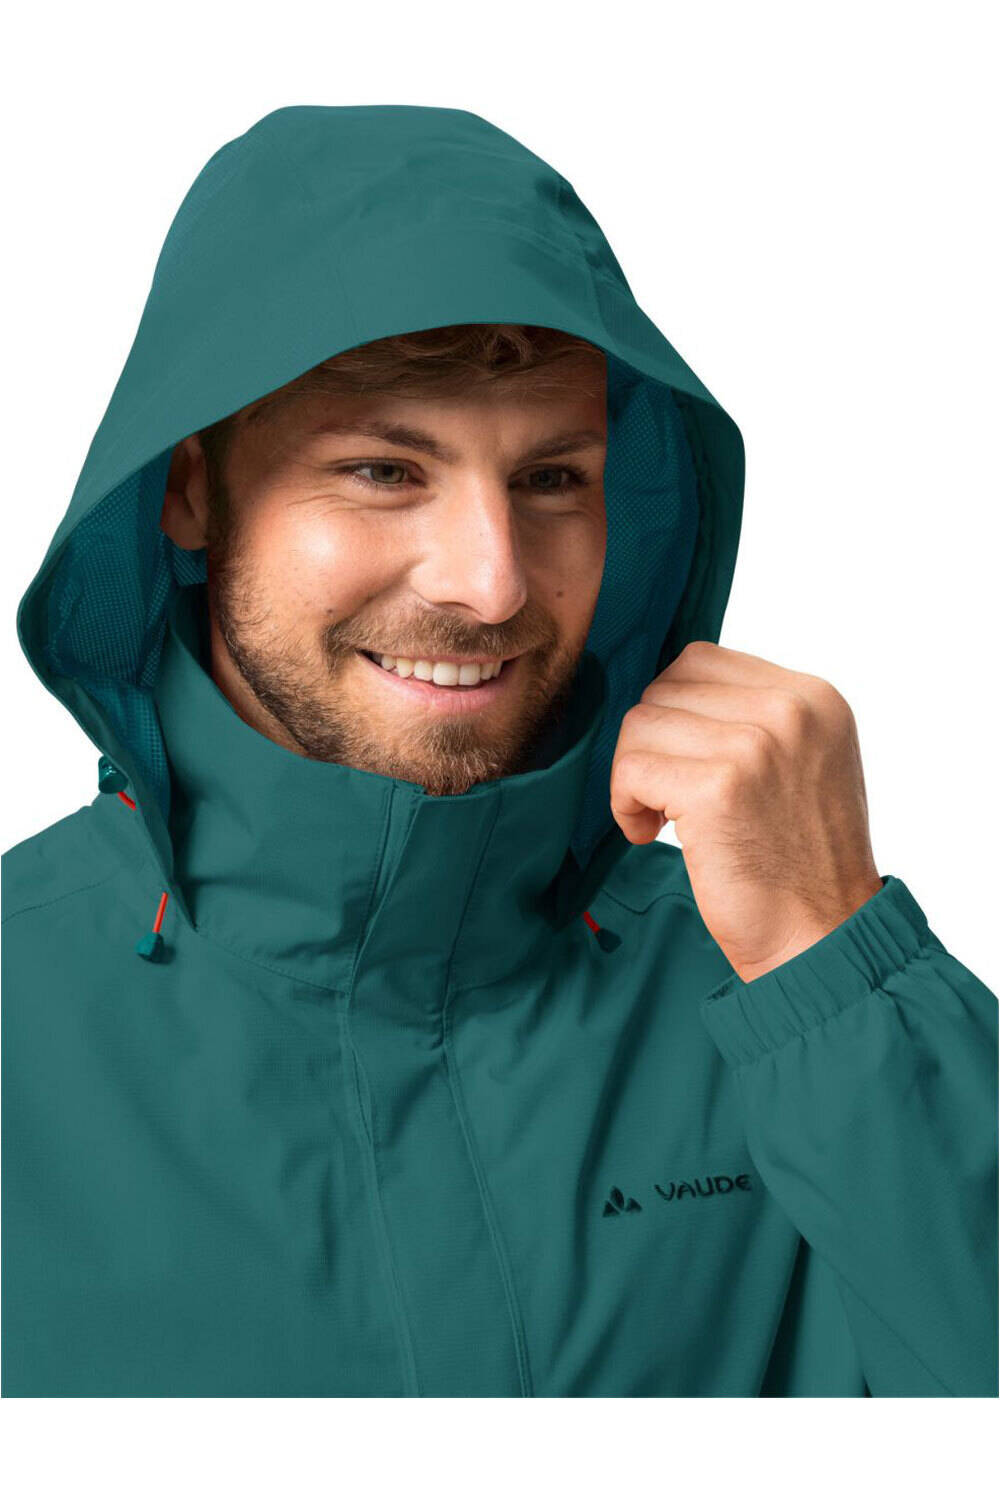 Vaude chaqueta impermeable hombre Men's Escape Light Jacket vista detalle